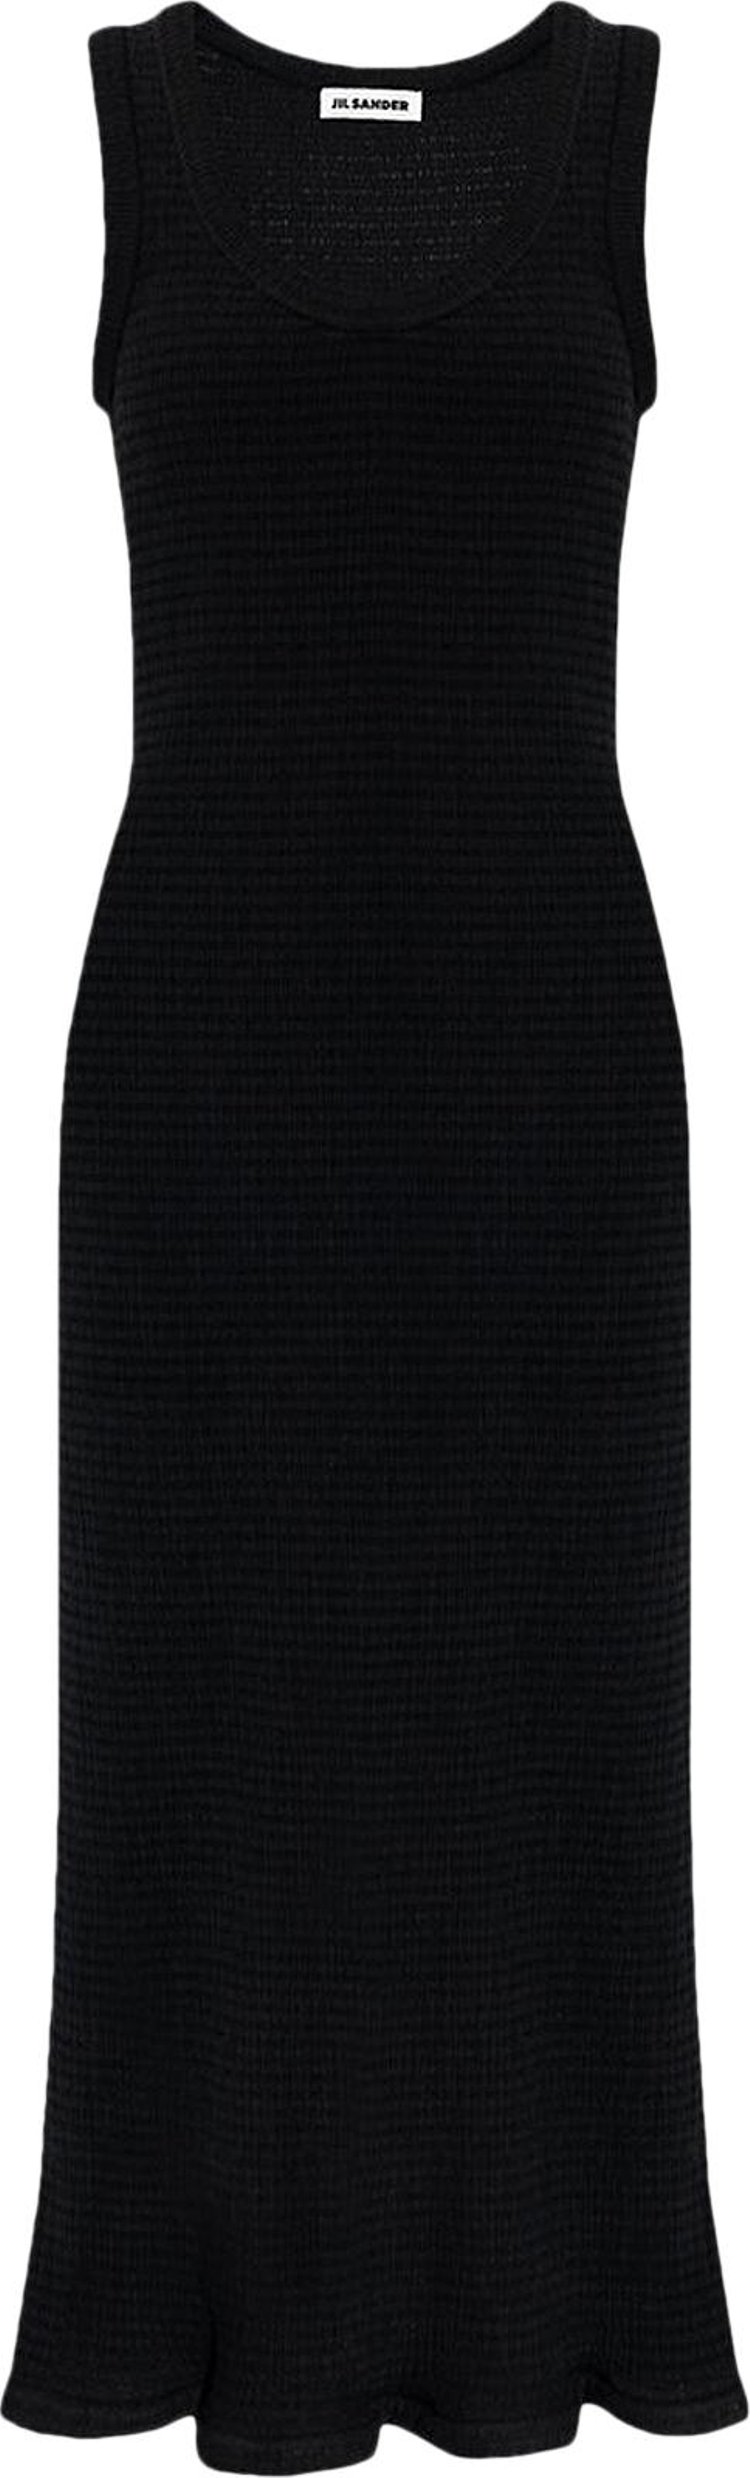 Jil Sander Knit Tank Dress 'Black'